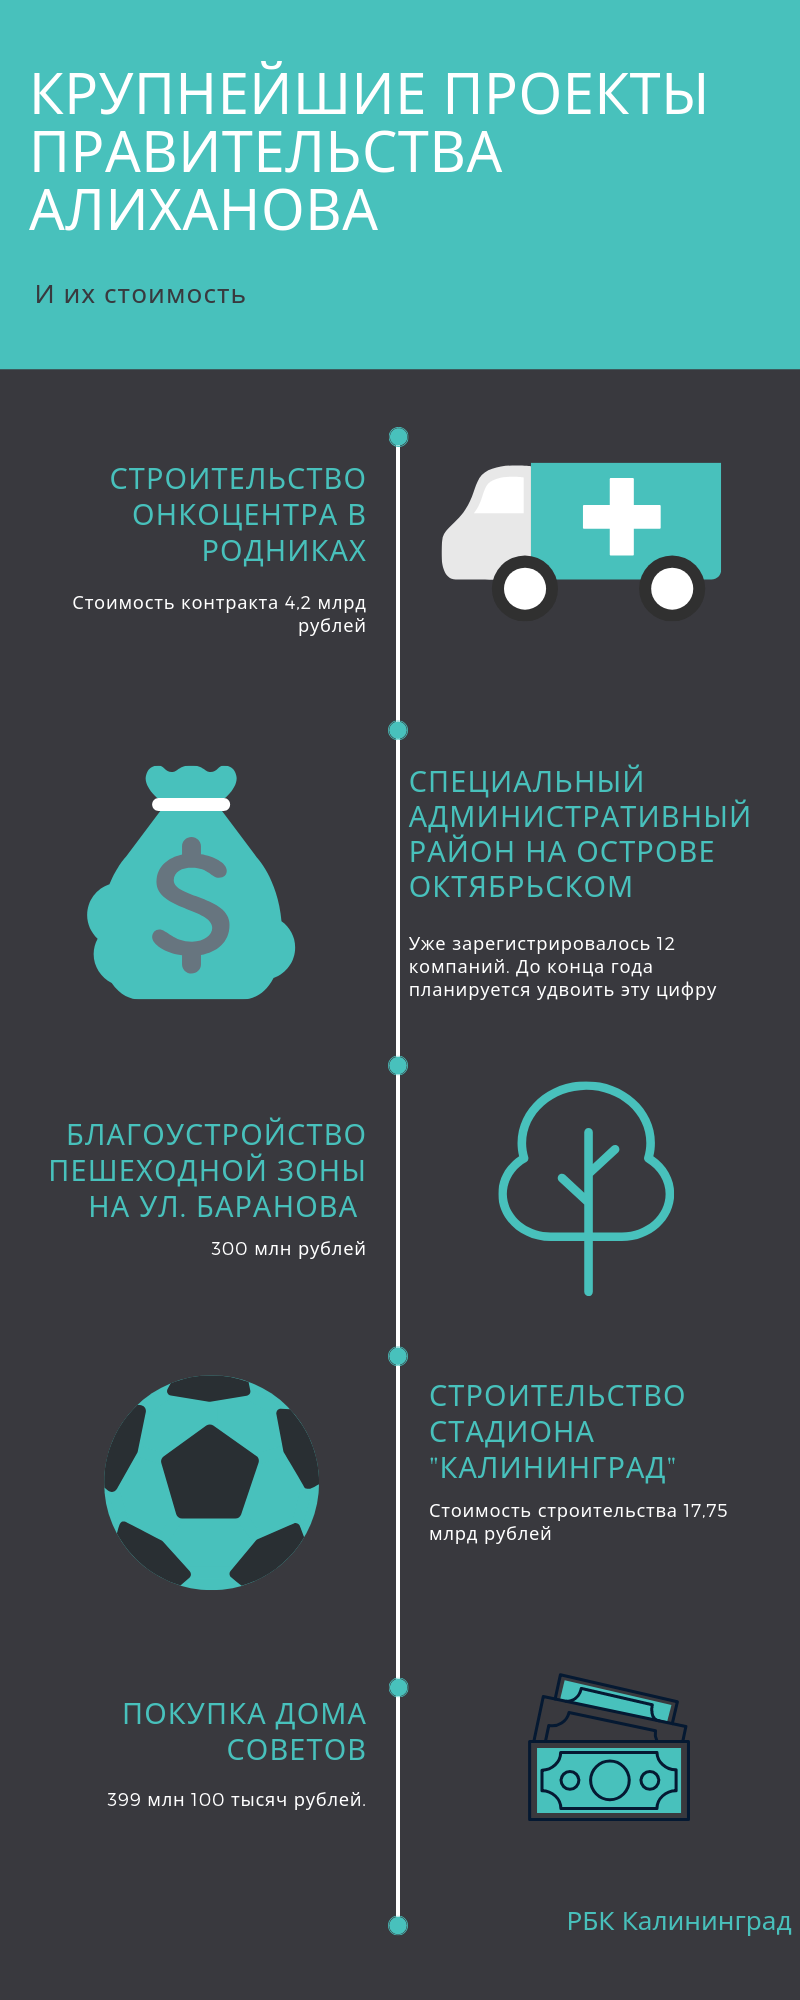 Крупнейшие проекты правительства Алиханова за три года. Инфографика